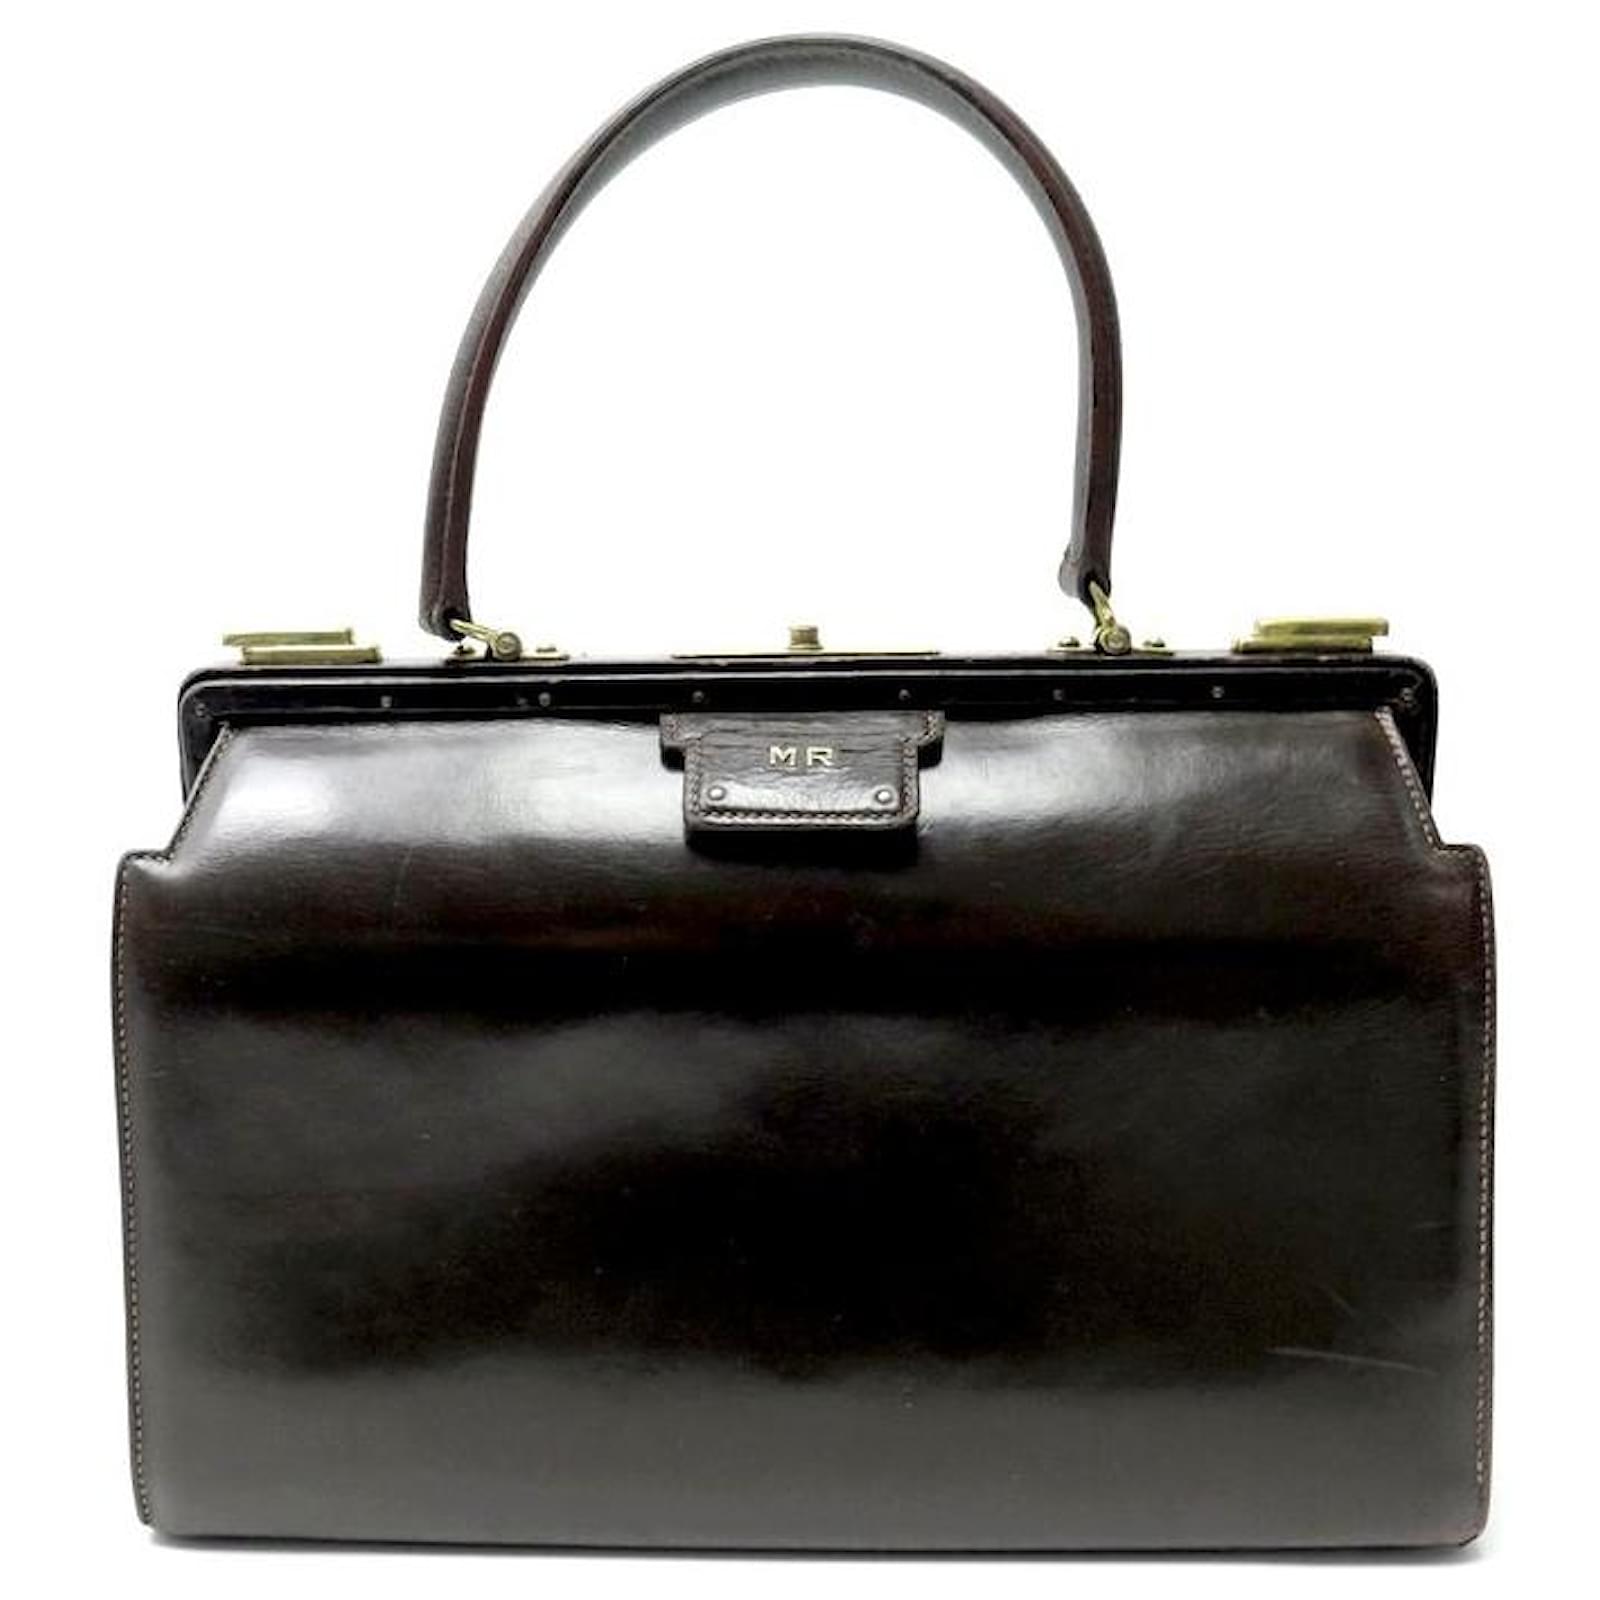 Vintage Hermes Handbag Auction